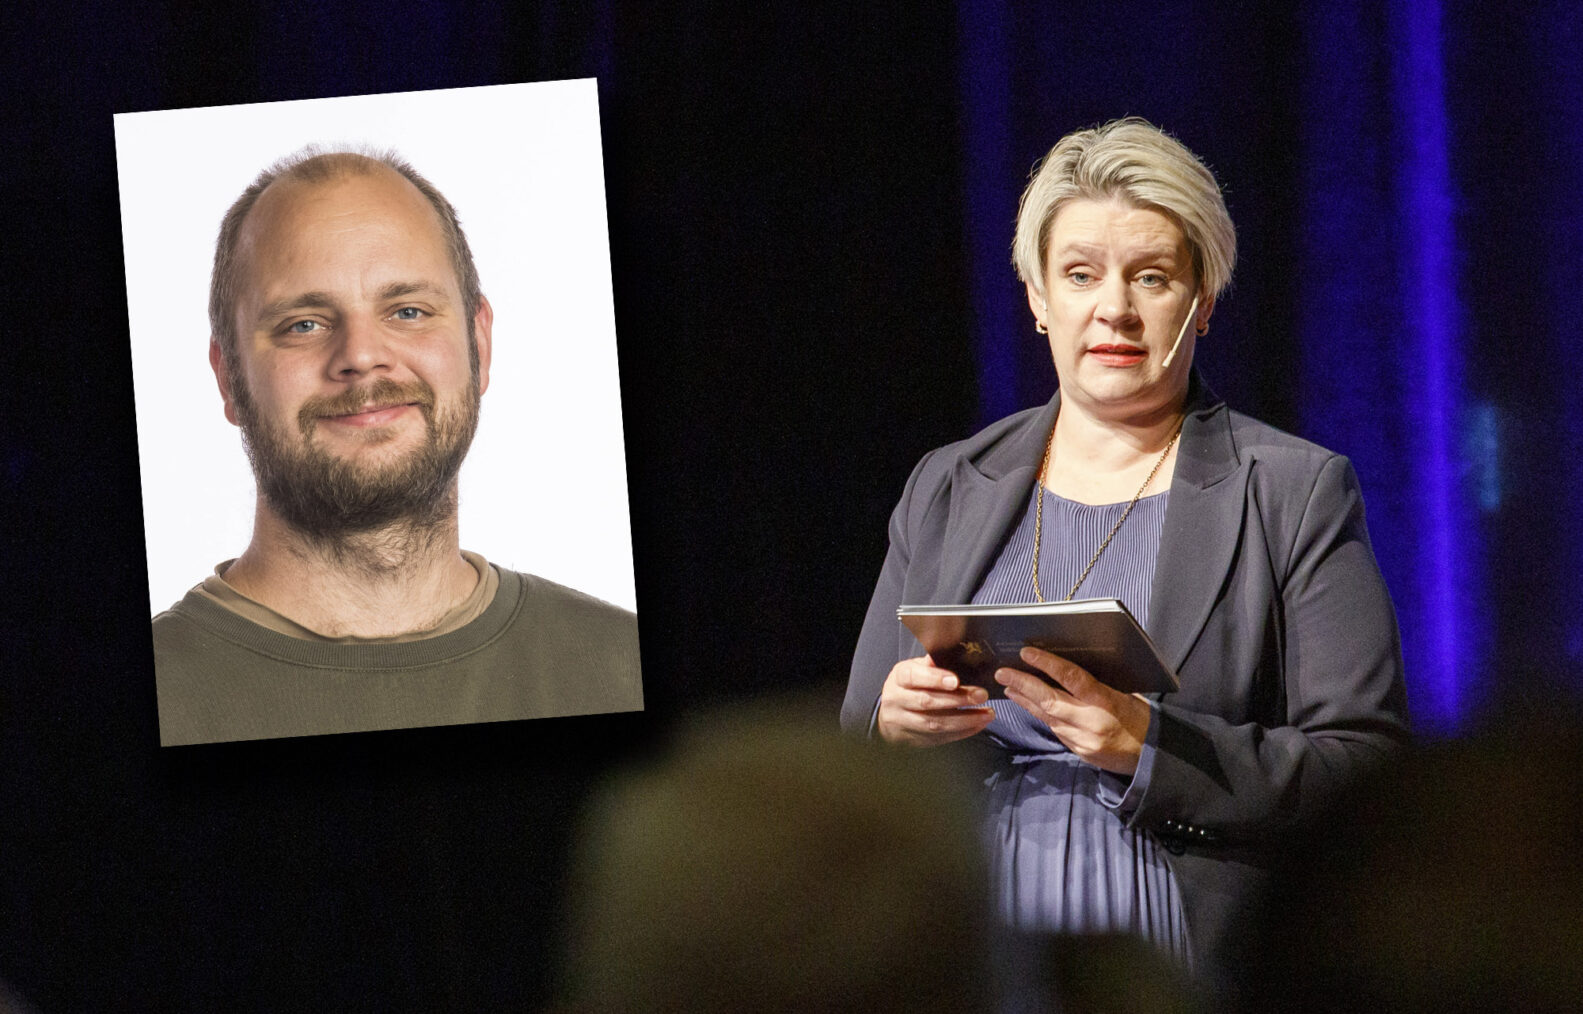 Portrett av Mímír Kristjánsson innfelt på et bilde av Marte Mjøs Persen som holder tale på et møte.